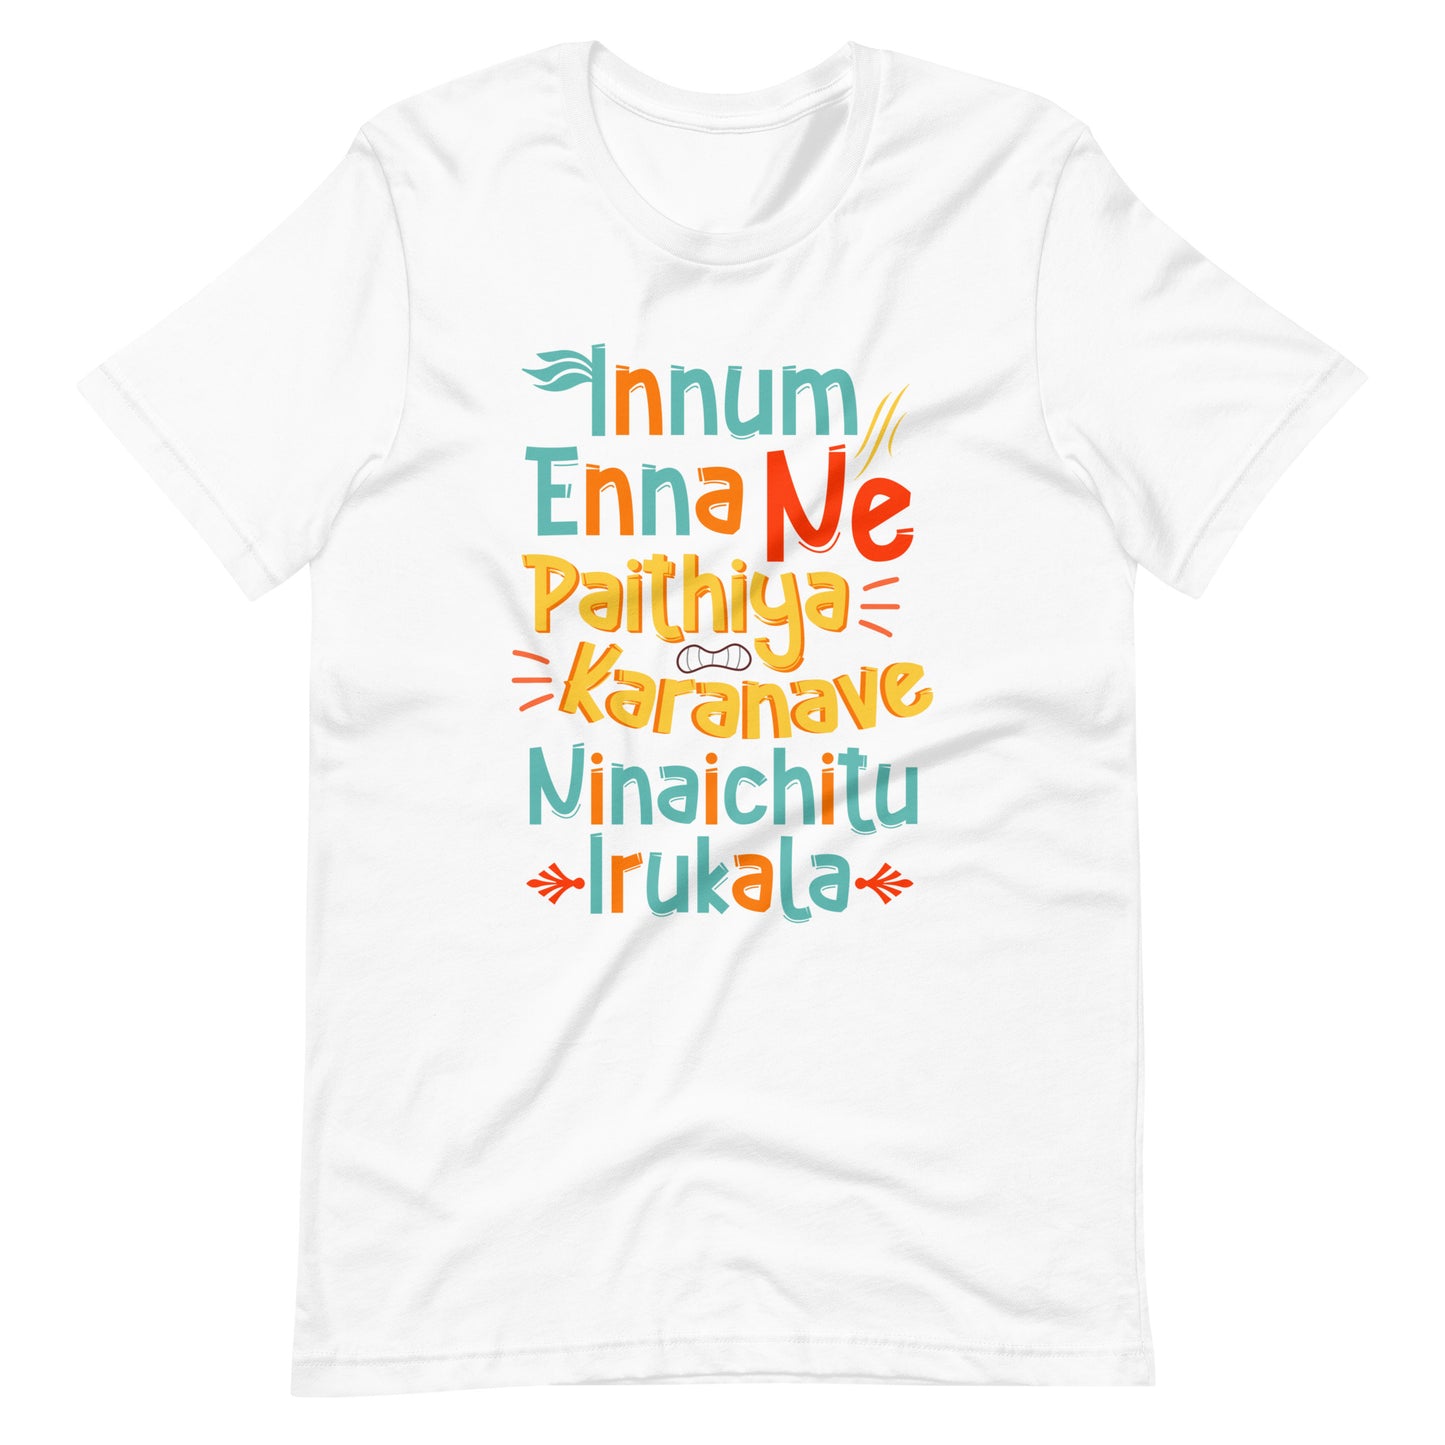 Unisex Tamil t-shirt "Innum Enna Ne"